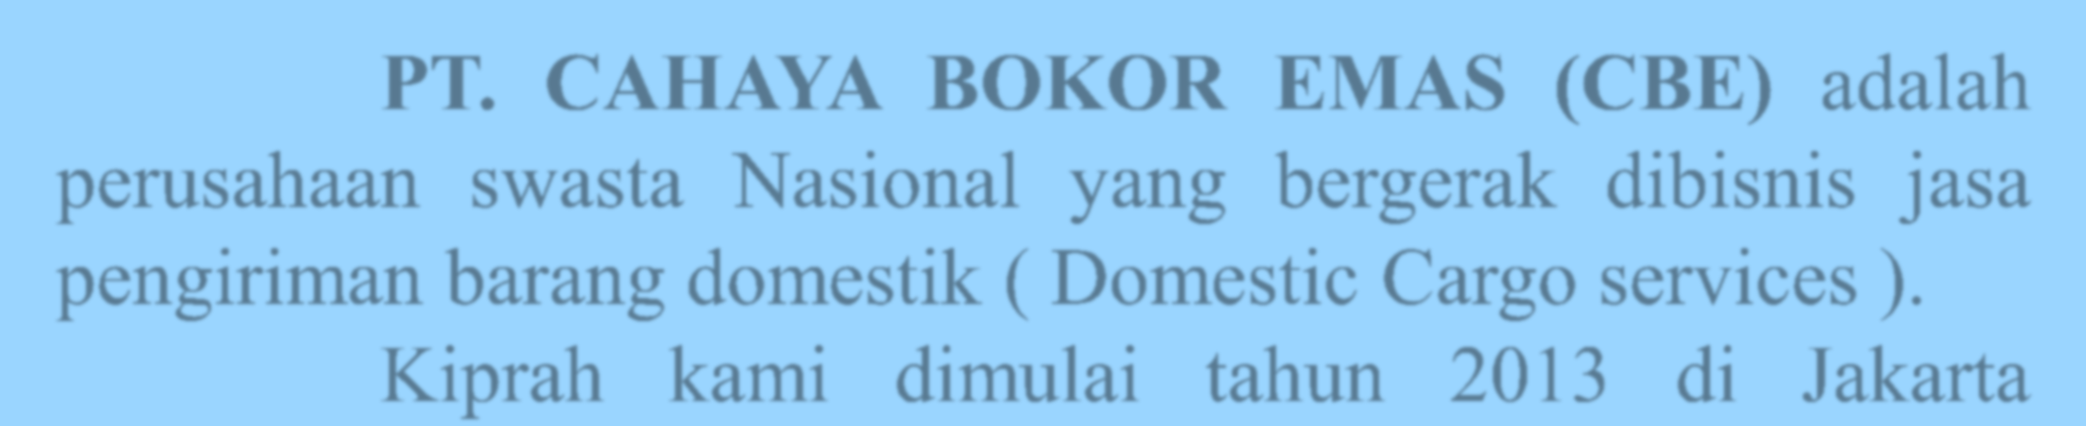 Sekilas Sejarah PT. CAHAYA BOKOR EMAS (CBE) adalah perusahaan swasta Nasional yang bergerak dibisnis jasa pengiriman barang domestik ( Domestic Cargo services ).